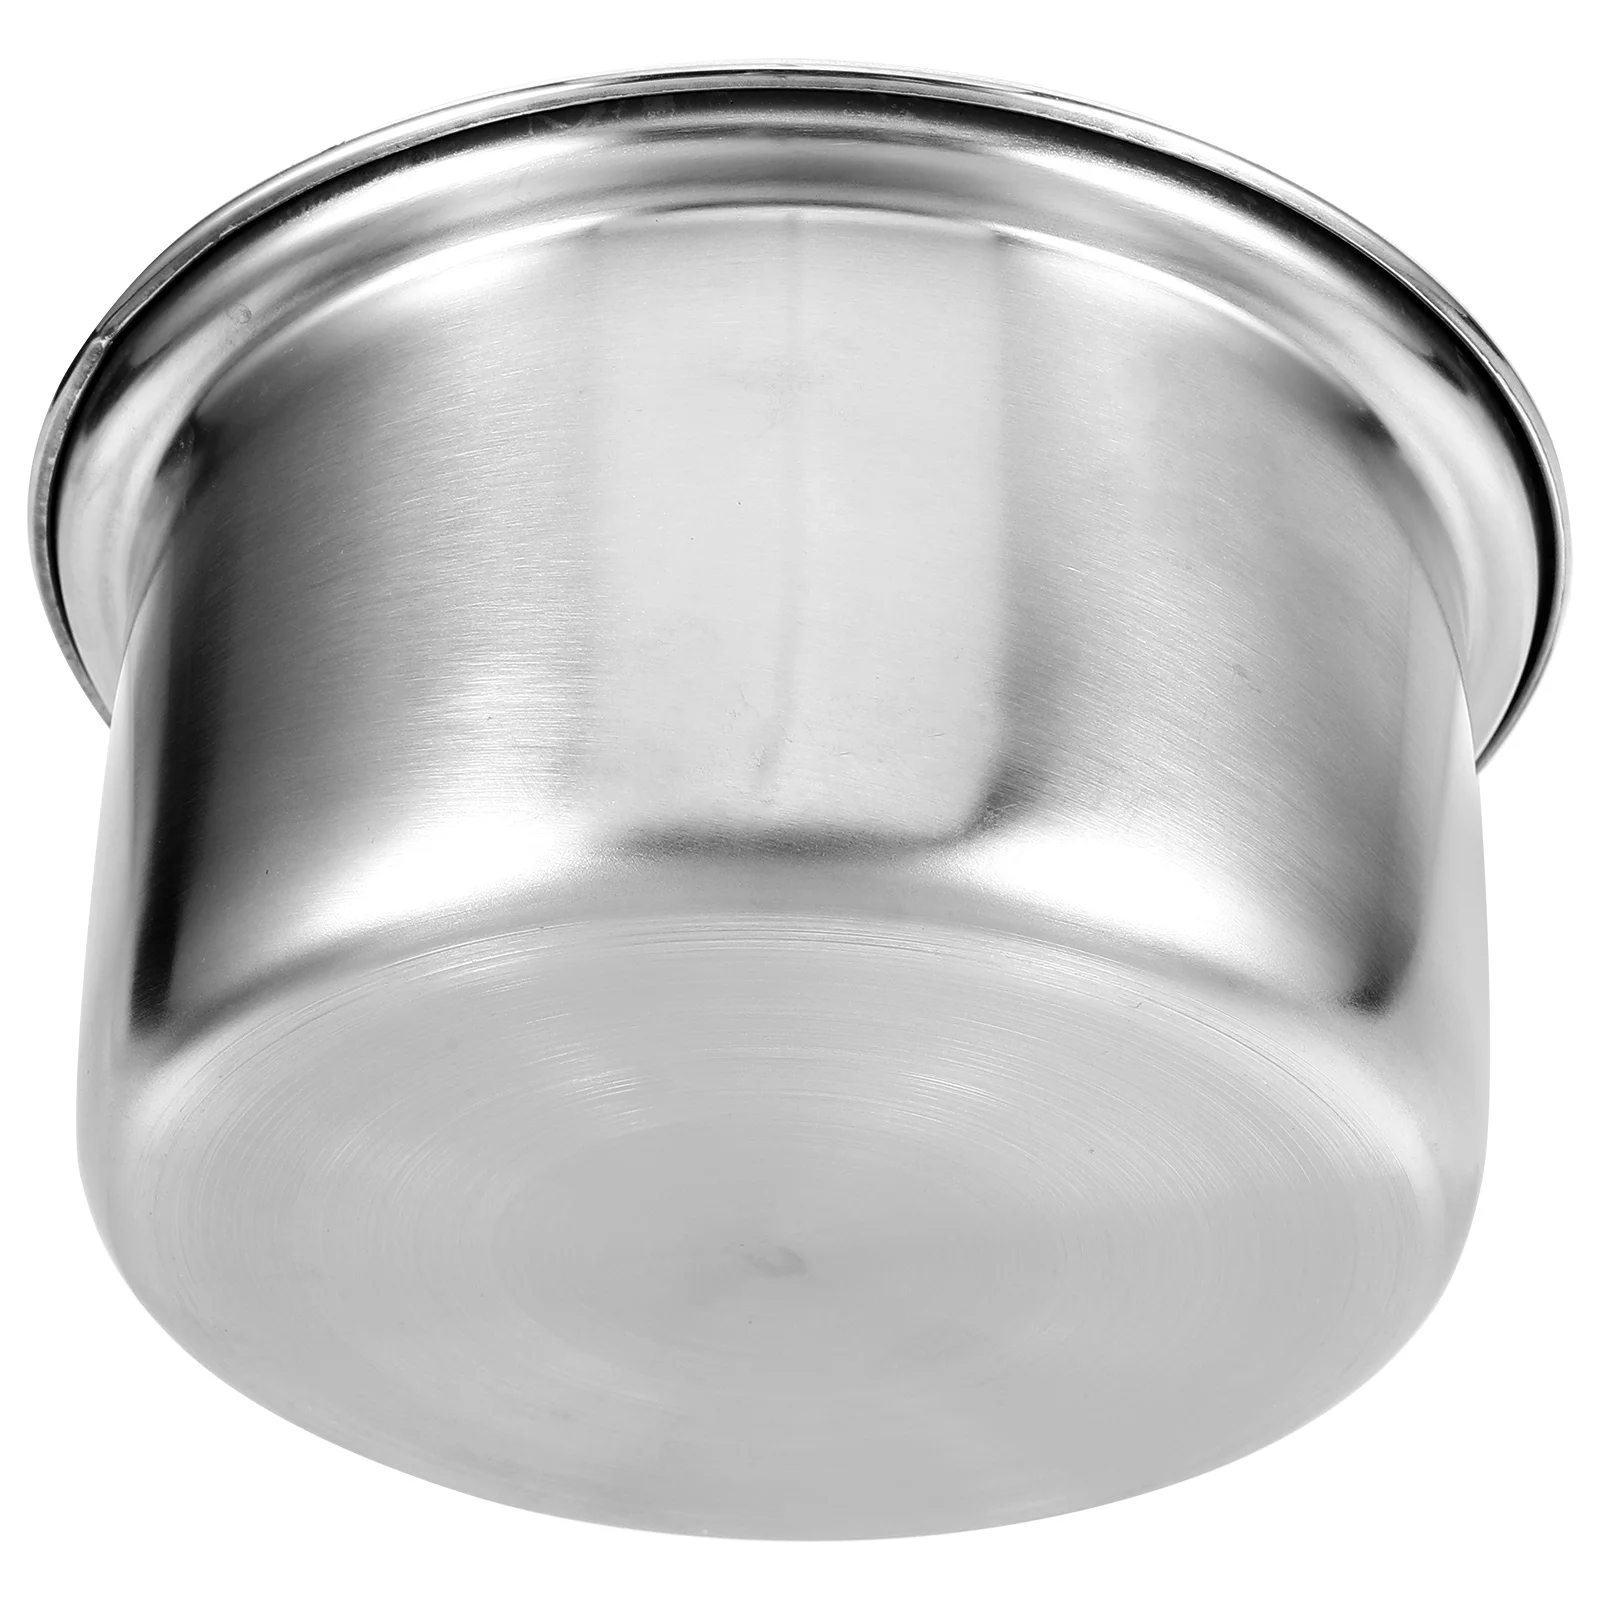 

Подложка для кастрюль, из нержавеющей стали, индукционная плита для приготовления пищи в стиле хоп, маленькая модель горячего супа